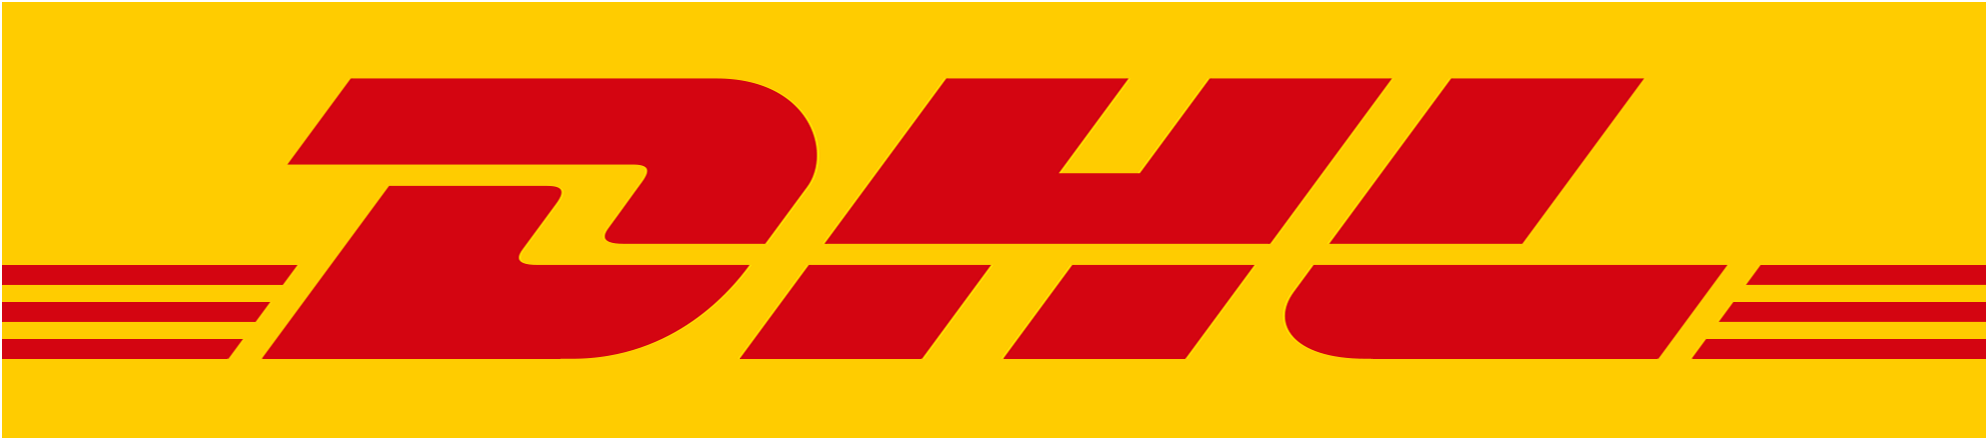 DHL Express Hong Kong